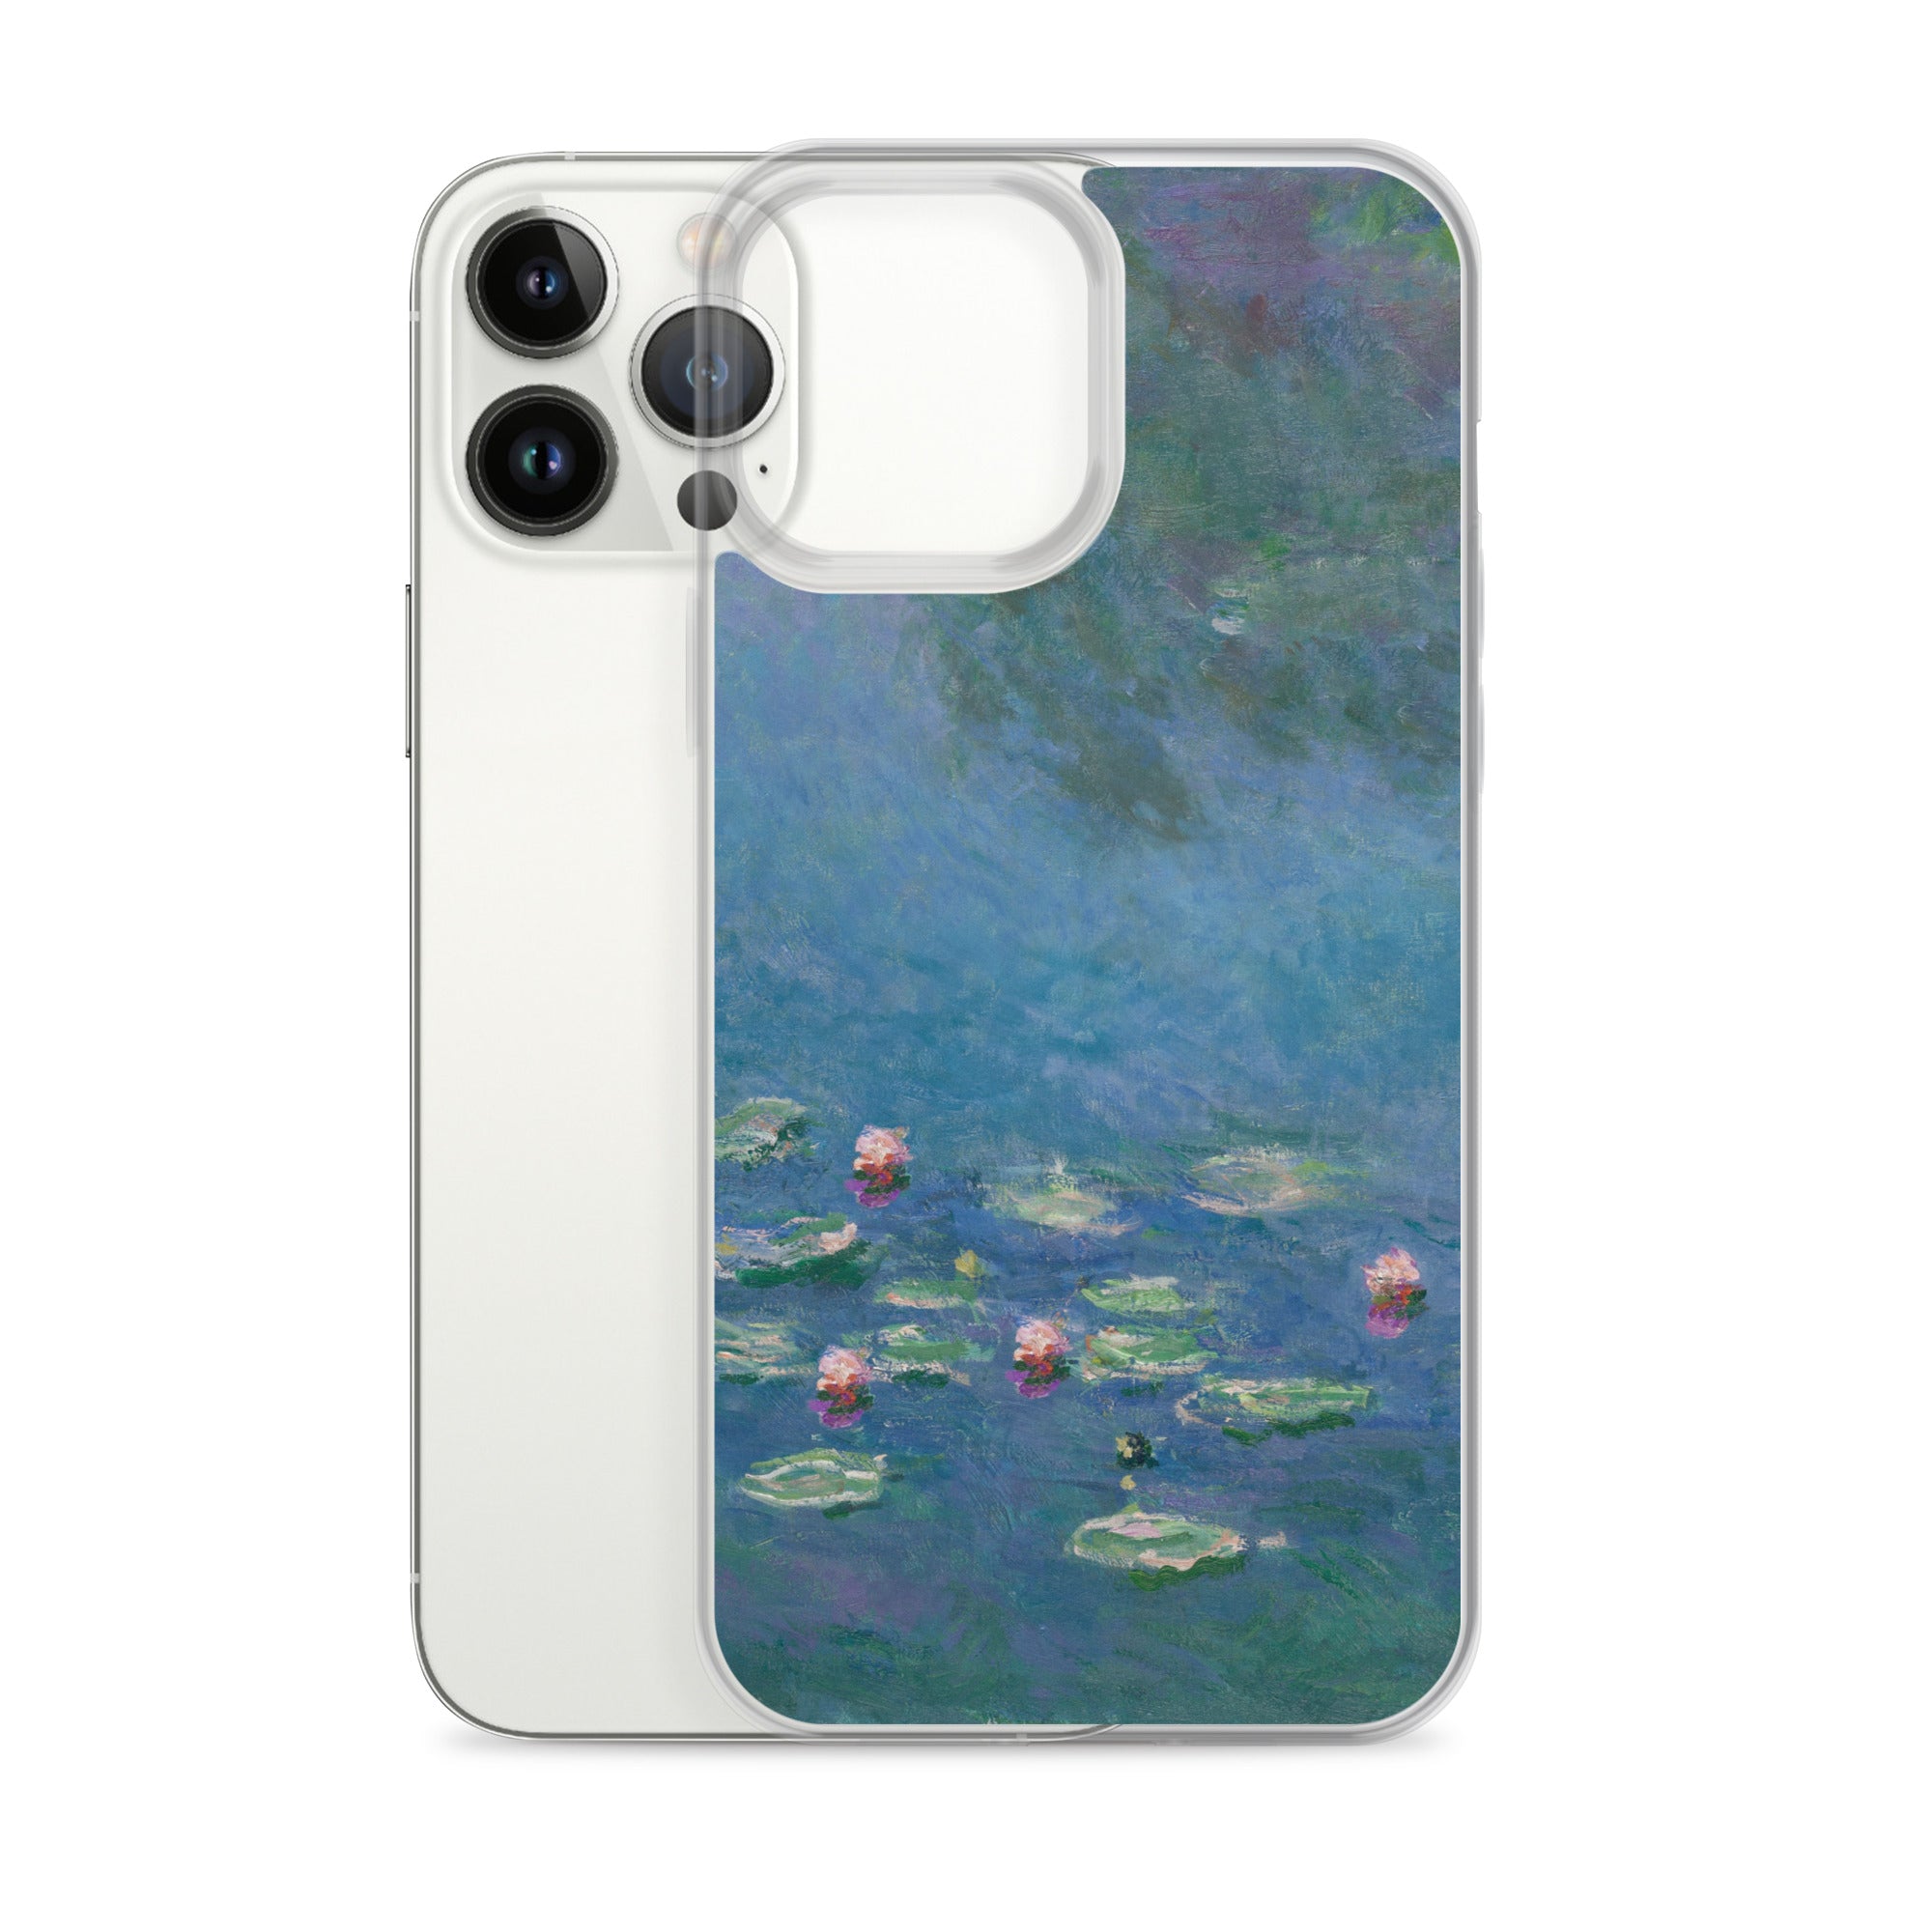 Claude Monet „Seerosen“ Berühmtes Gemälde iPhone® Hülle | Transparente Kunsthülle für iPhone®